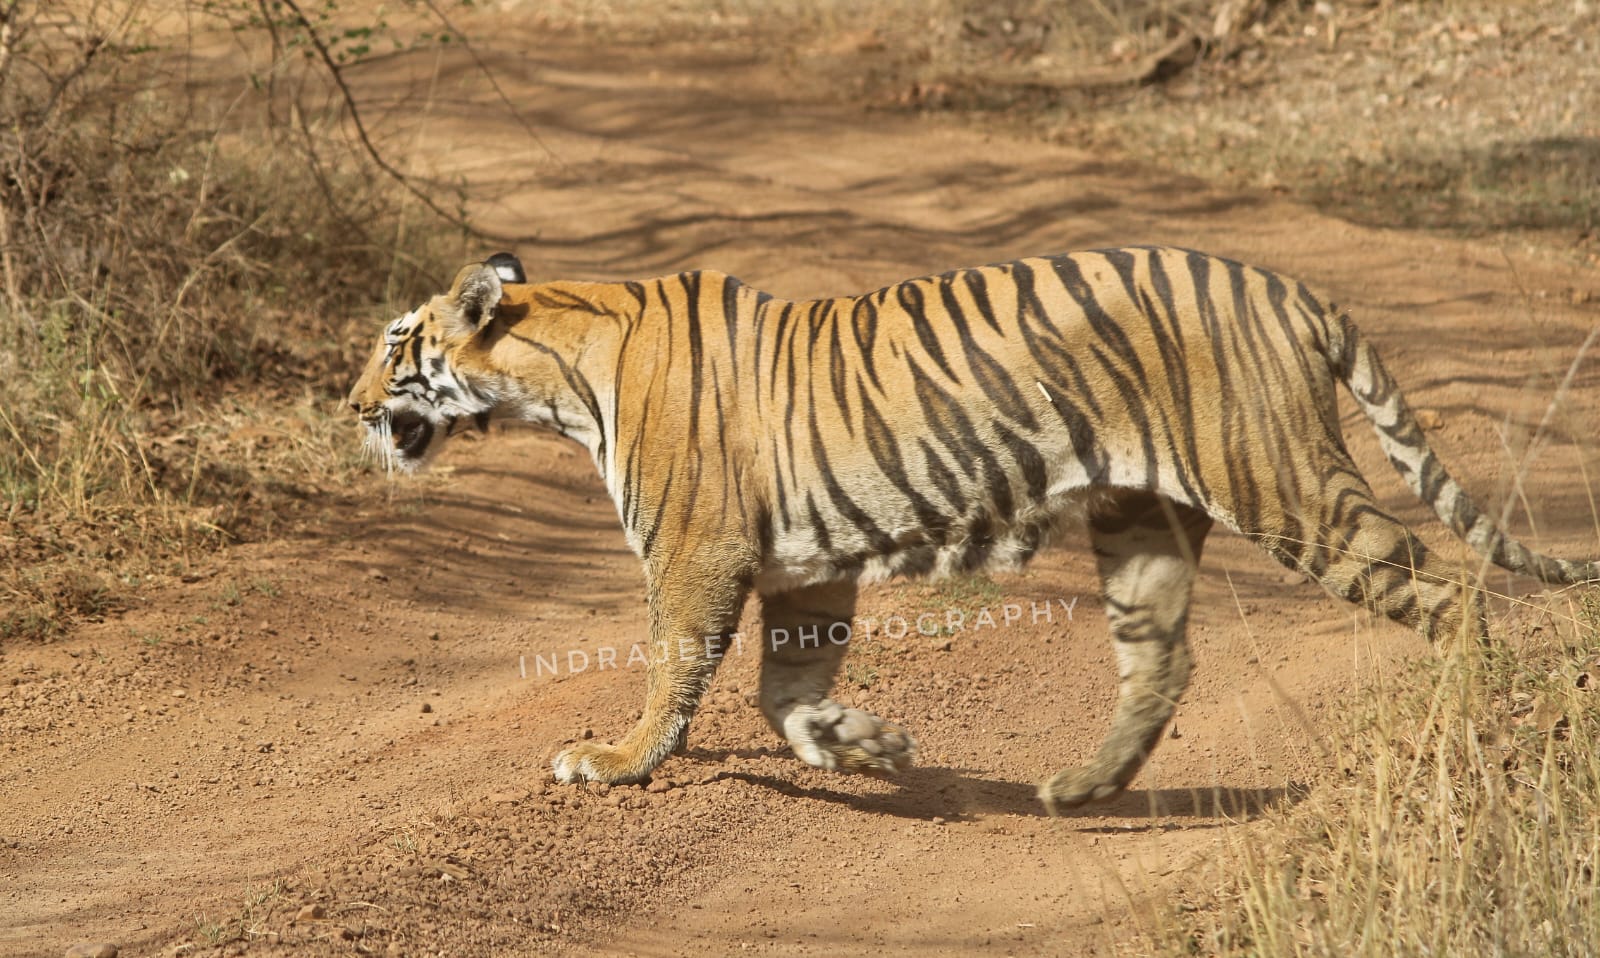 Janabai Tigress